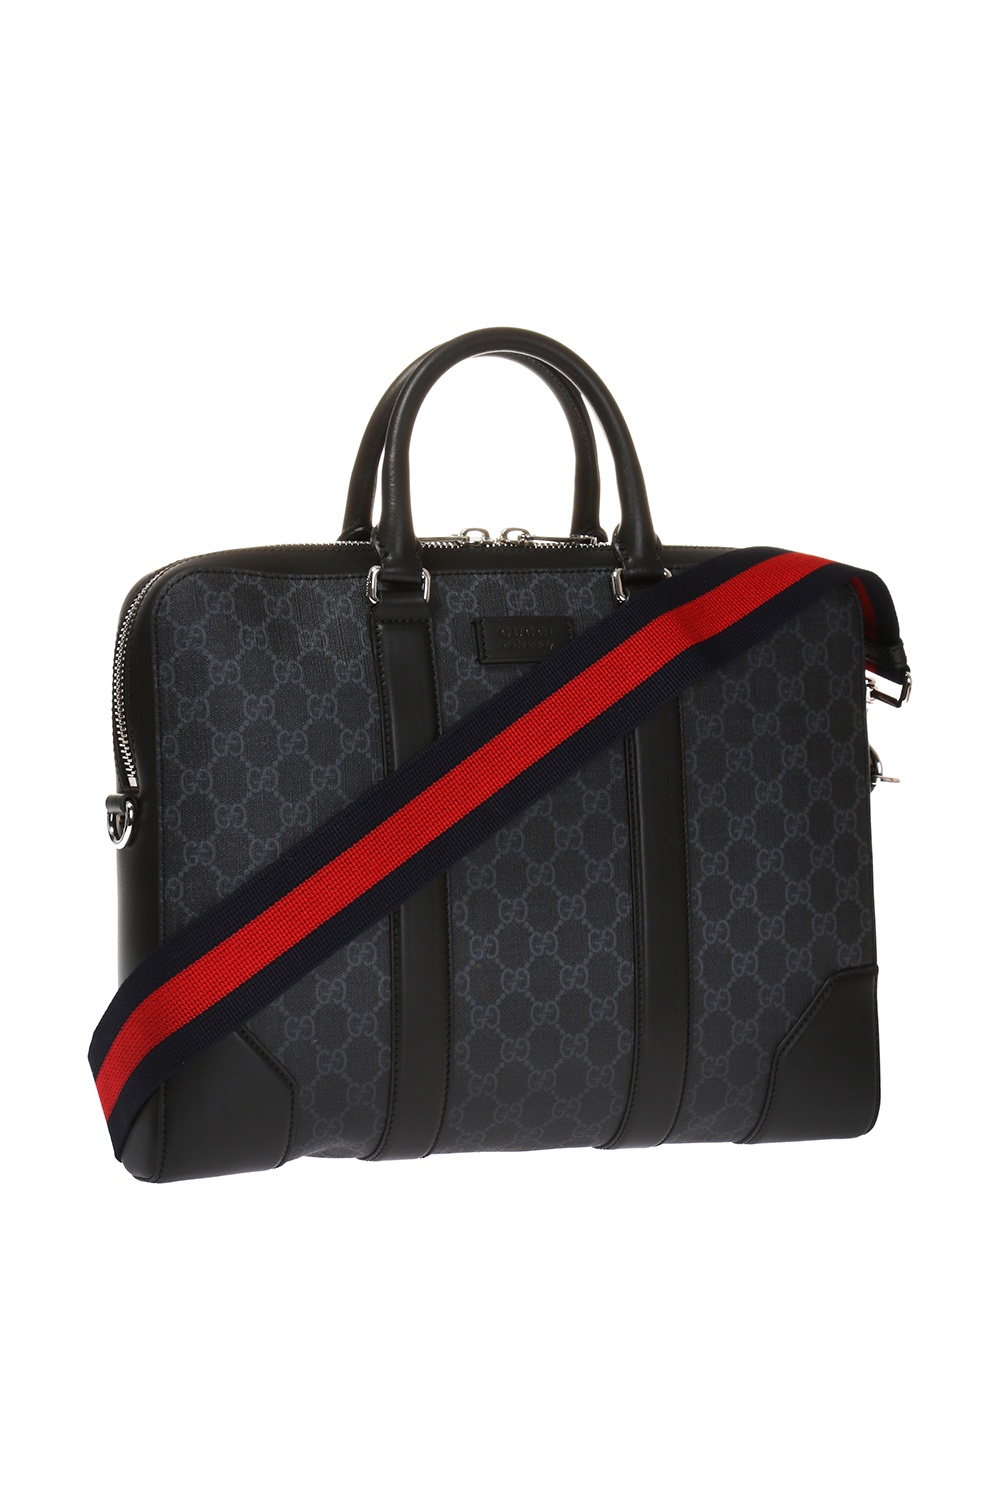 Gucci 'GG Supreme' canvas briefcase